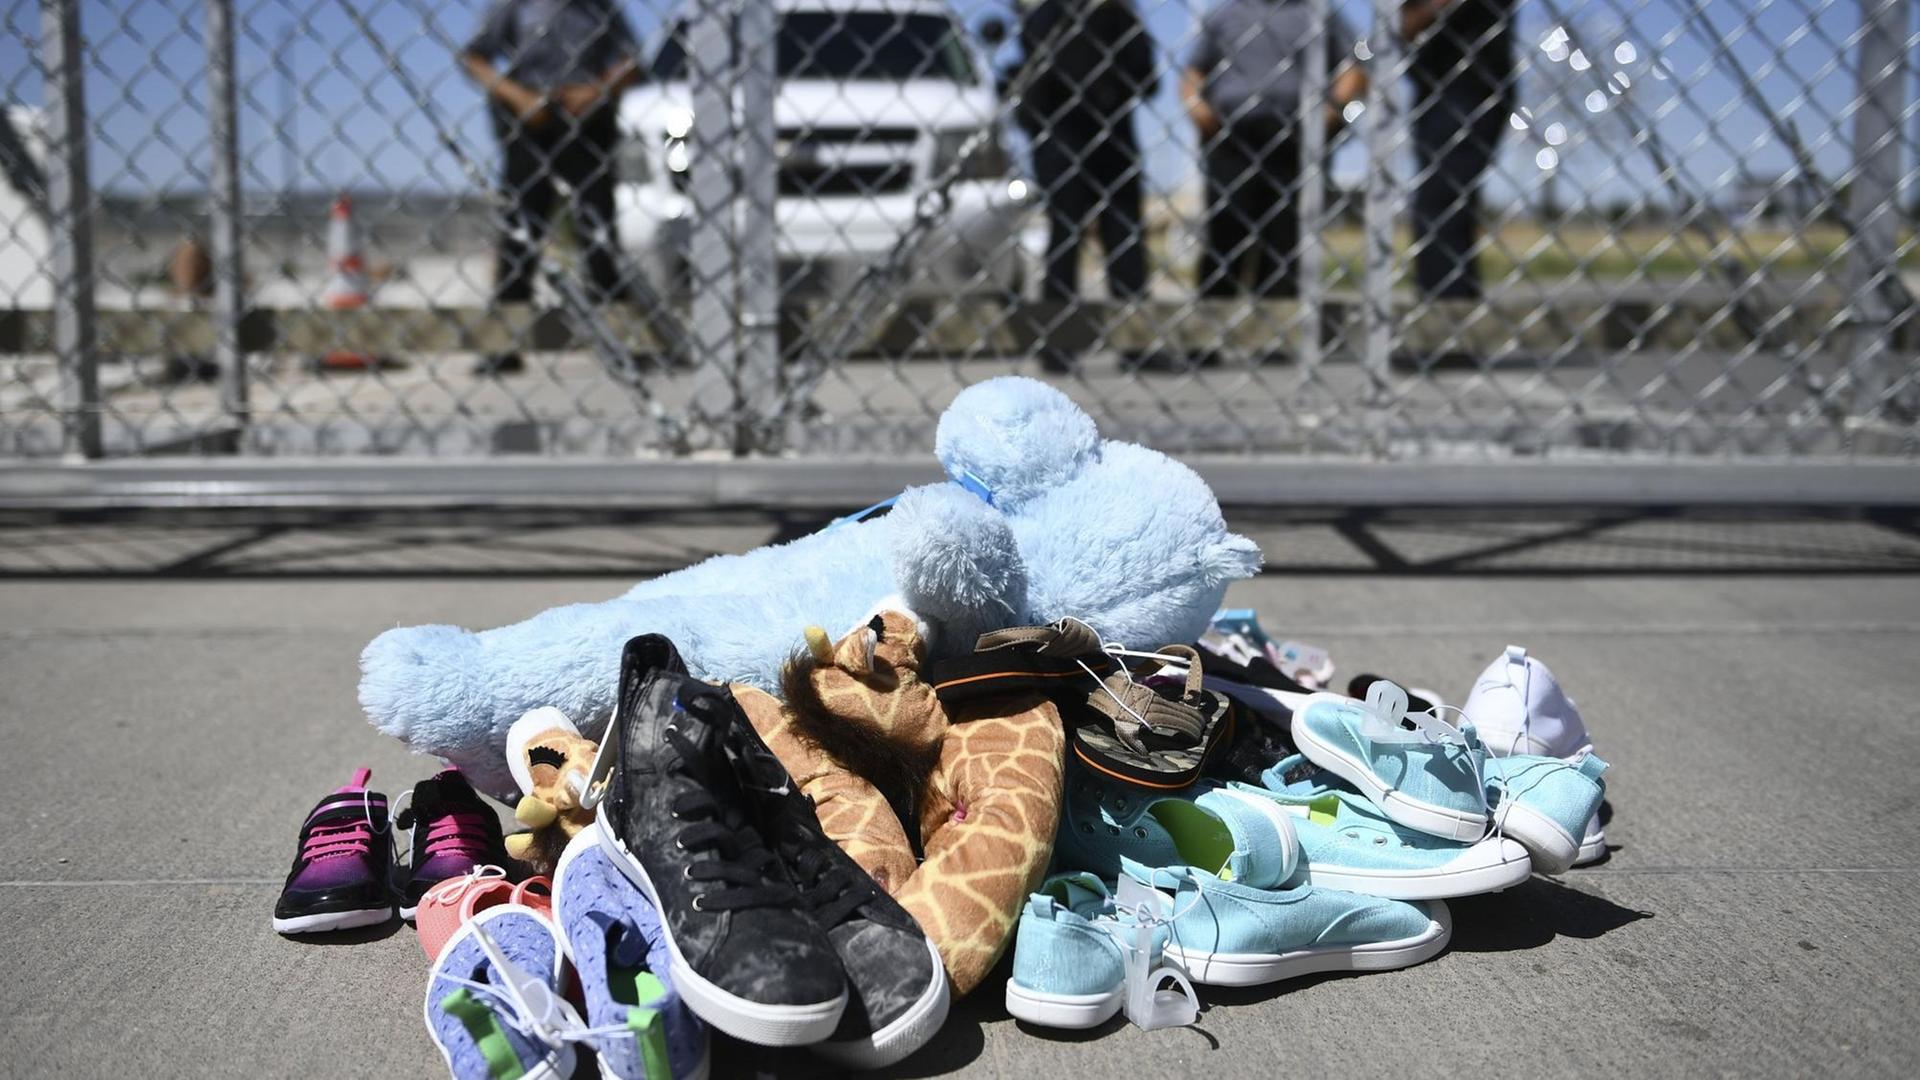 Schuhe und Teddybären vor dem Zaun des Tornillo-Flüchtlingslagers in der Nähe von El Paso, Texas, während einer Protestkundgebung US-amerikanischer Kommunalpolitiker gegen die Politik der Familientrennung der Trump- Administration